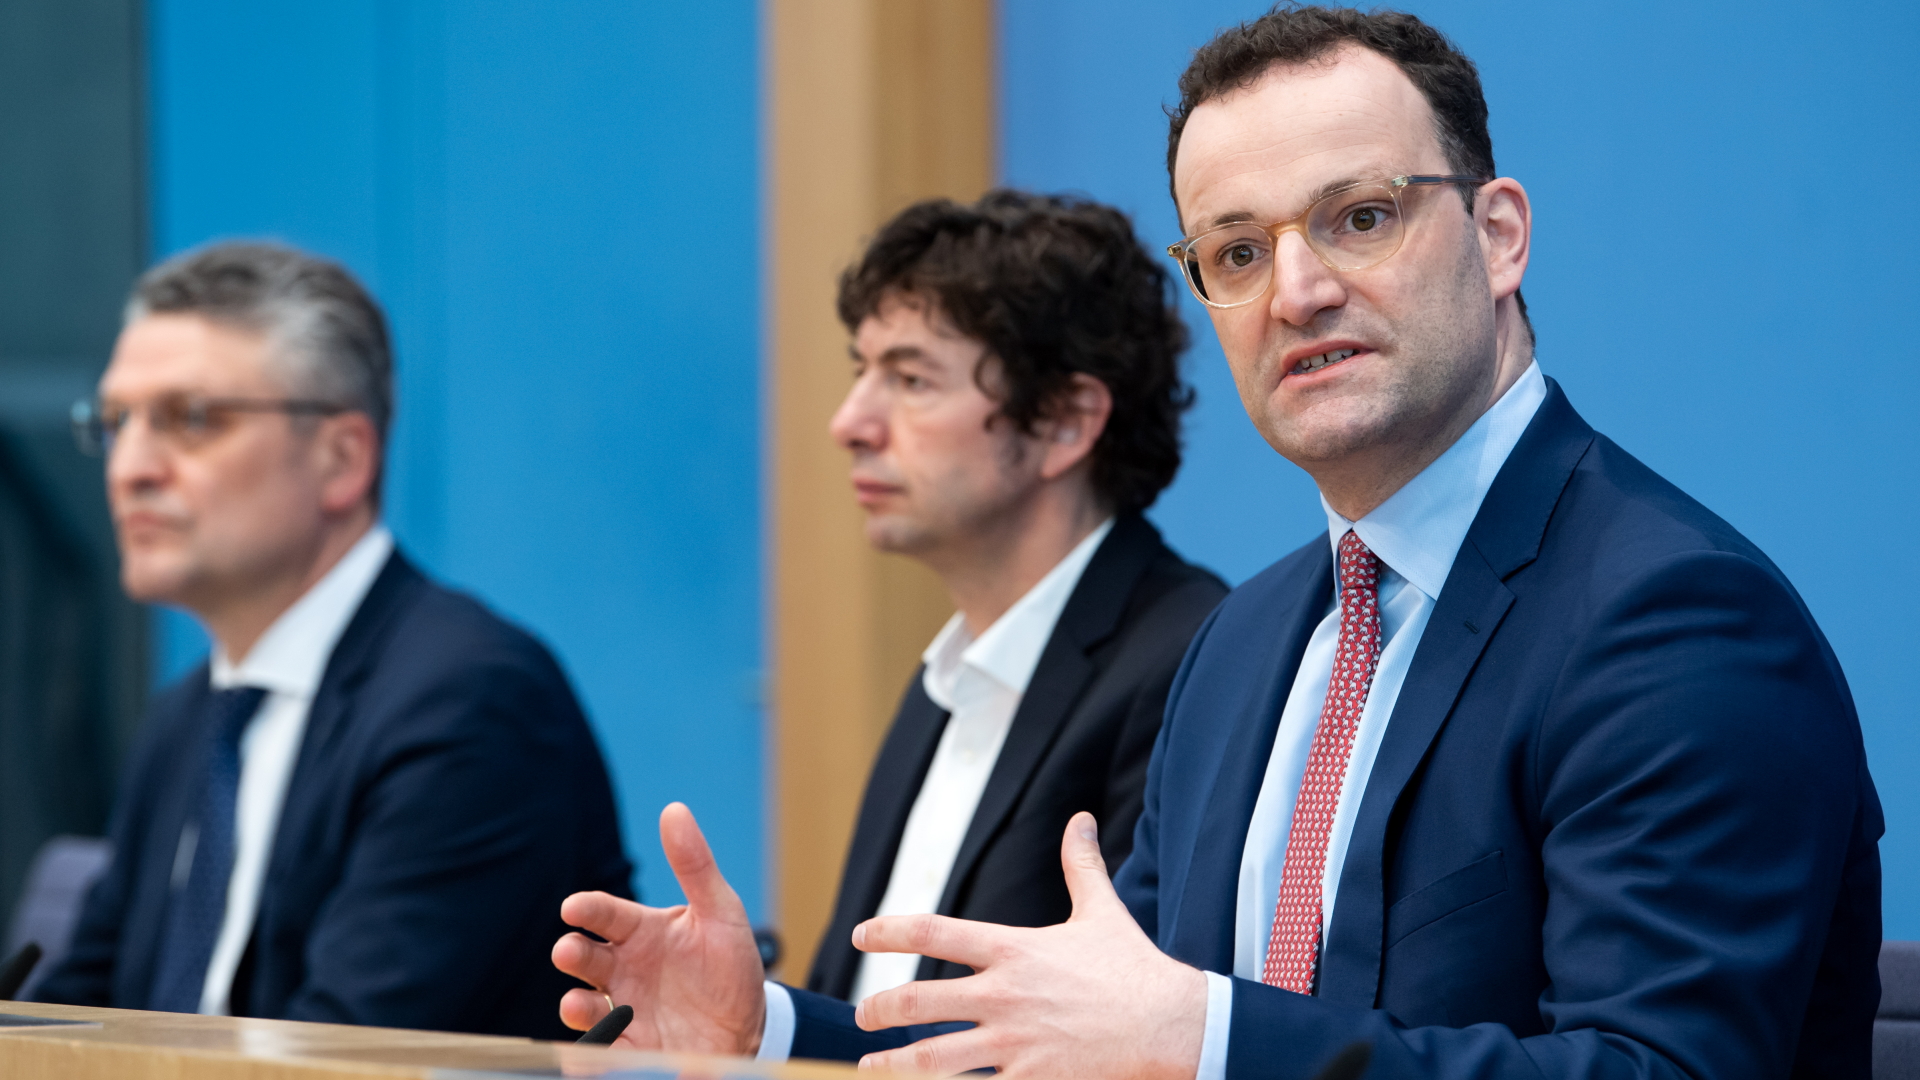 Gesundheitsminister Spahn, Christian Drosten von der Charite und Lothar Wieler vom RKI bei der Pressekonferenz | dpa